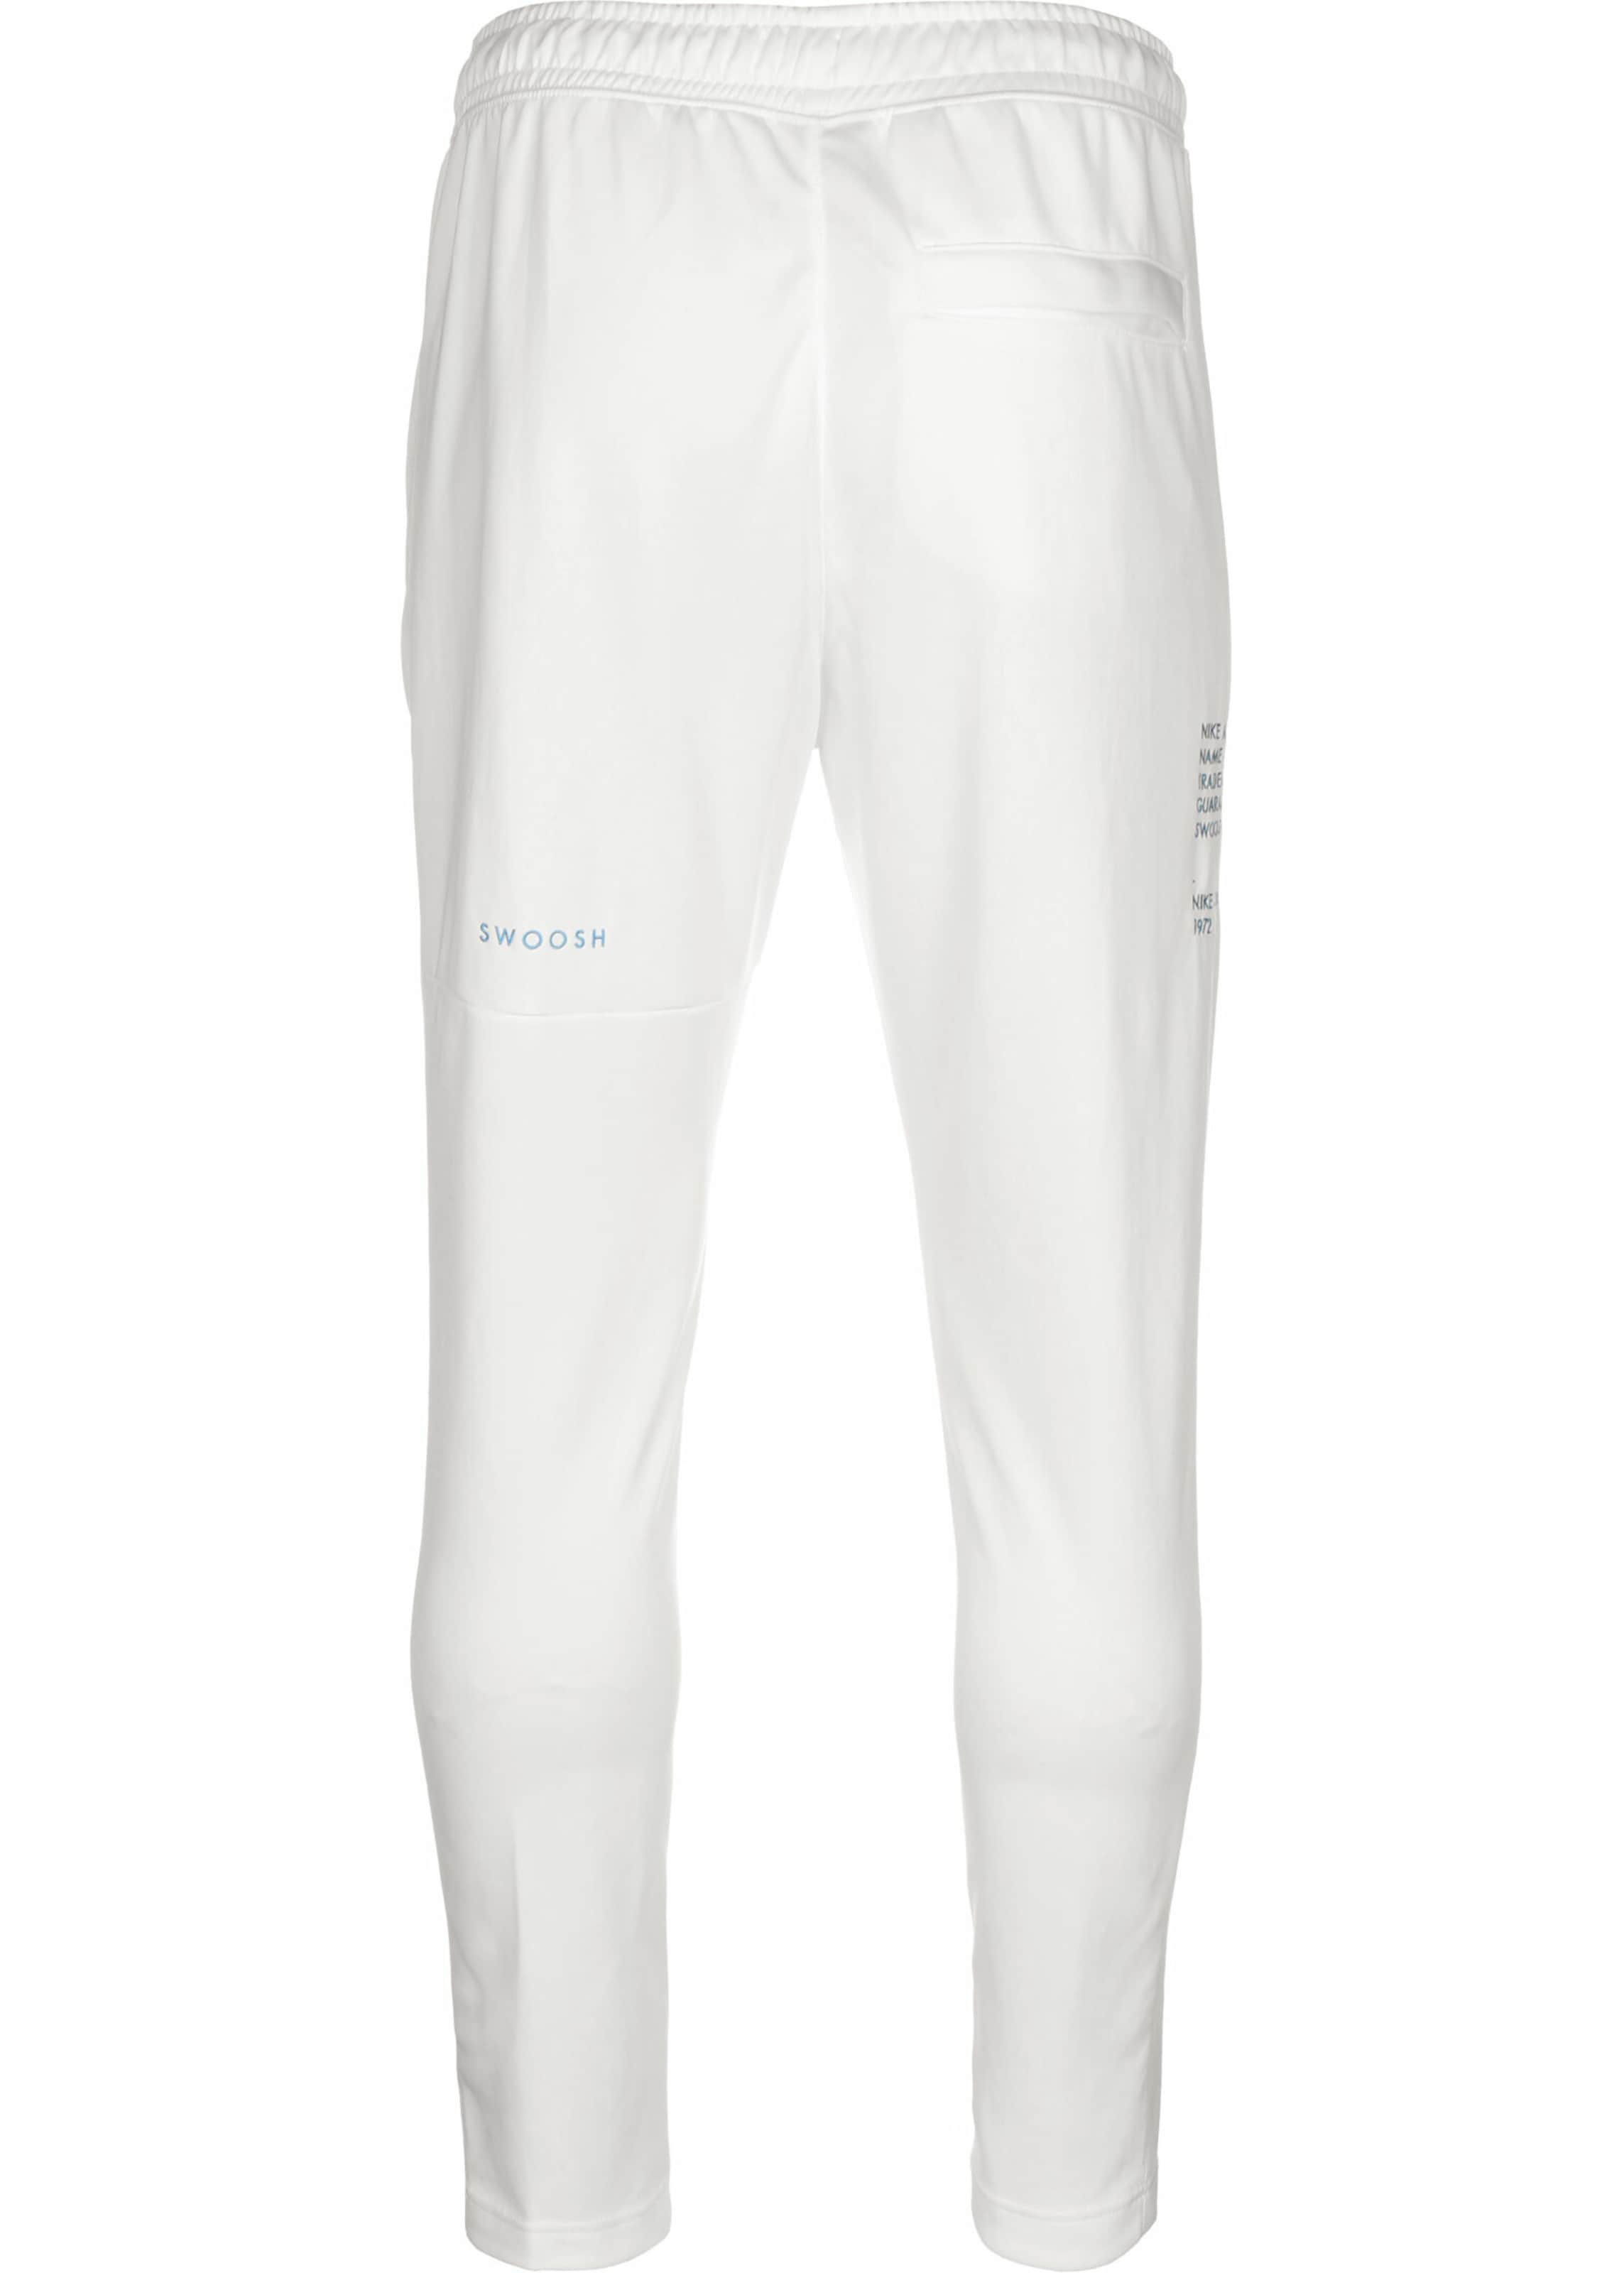 Männer Hosen Nike Sportswear Hose 'Swoosh' in Weiß - BU75679